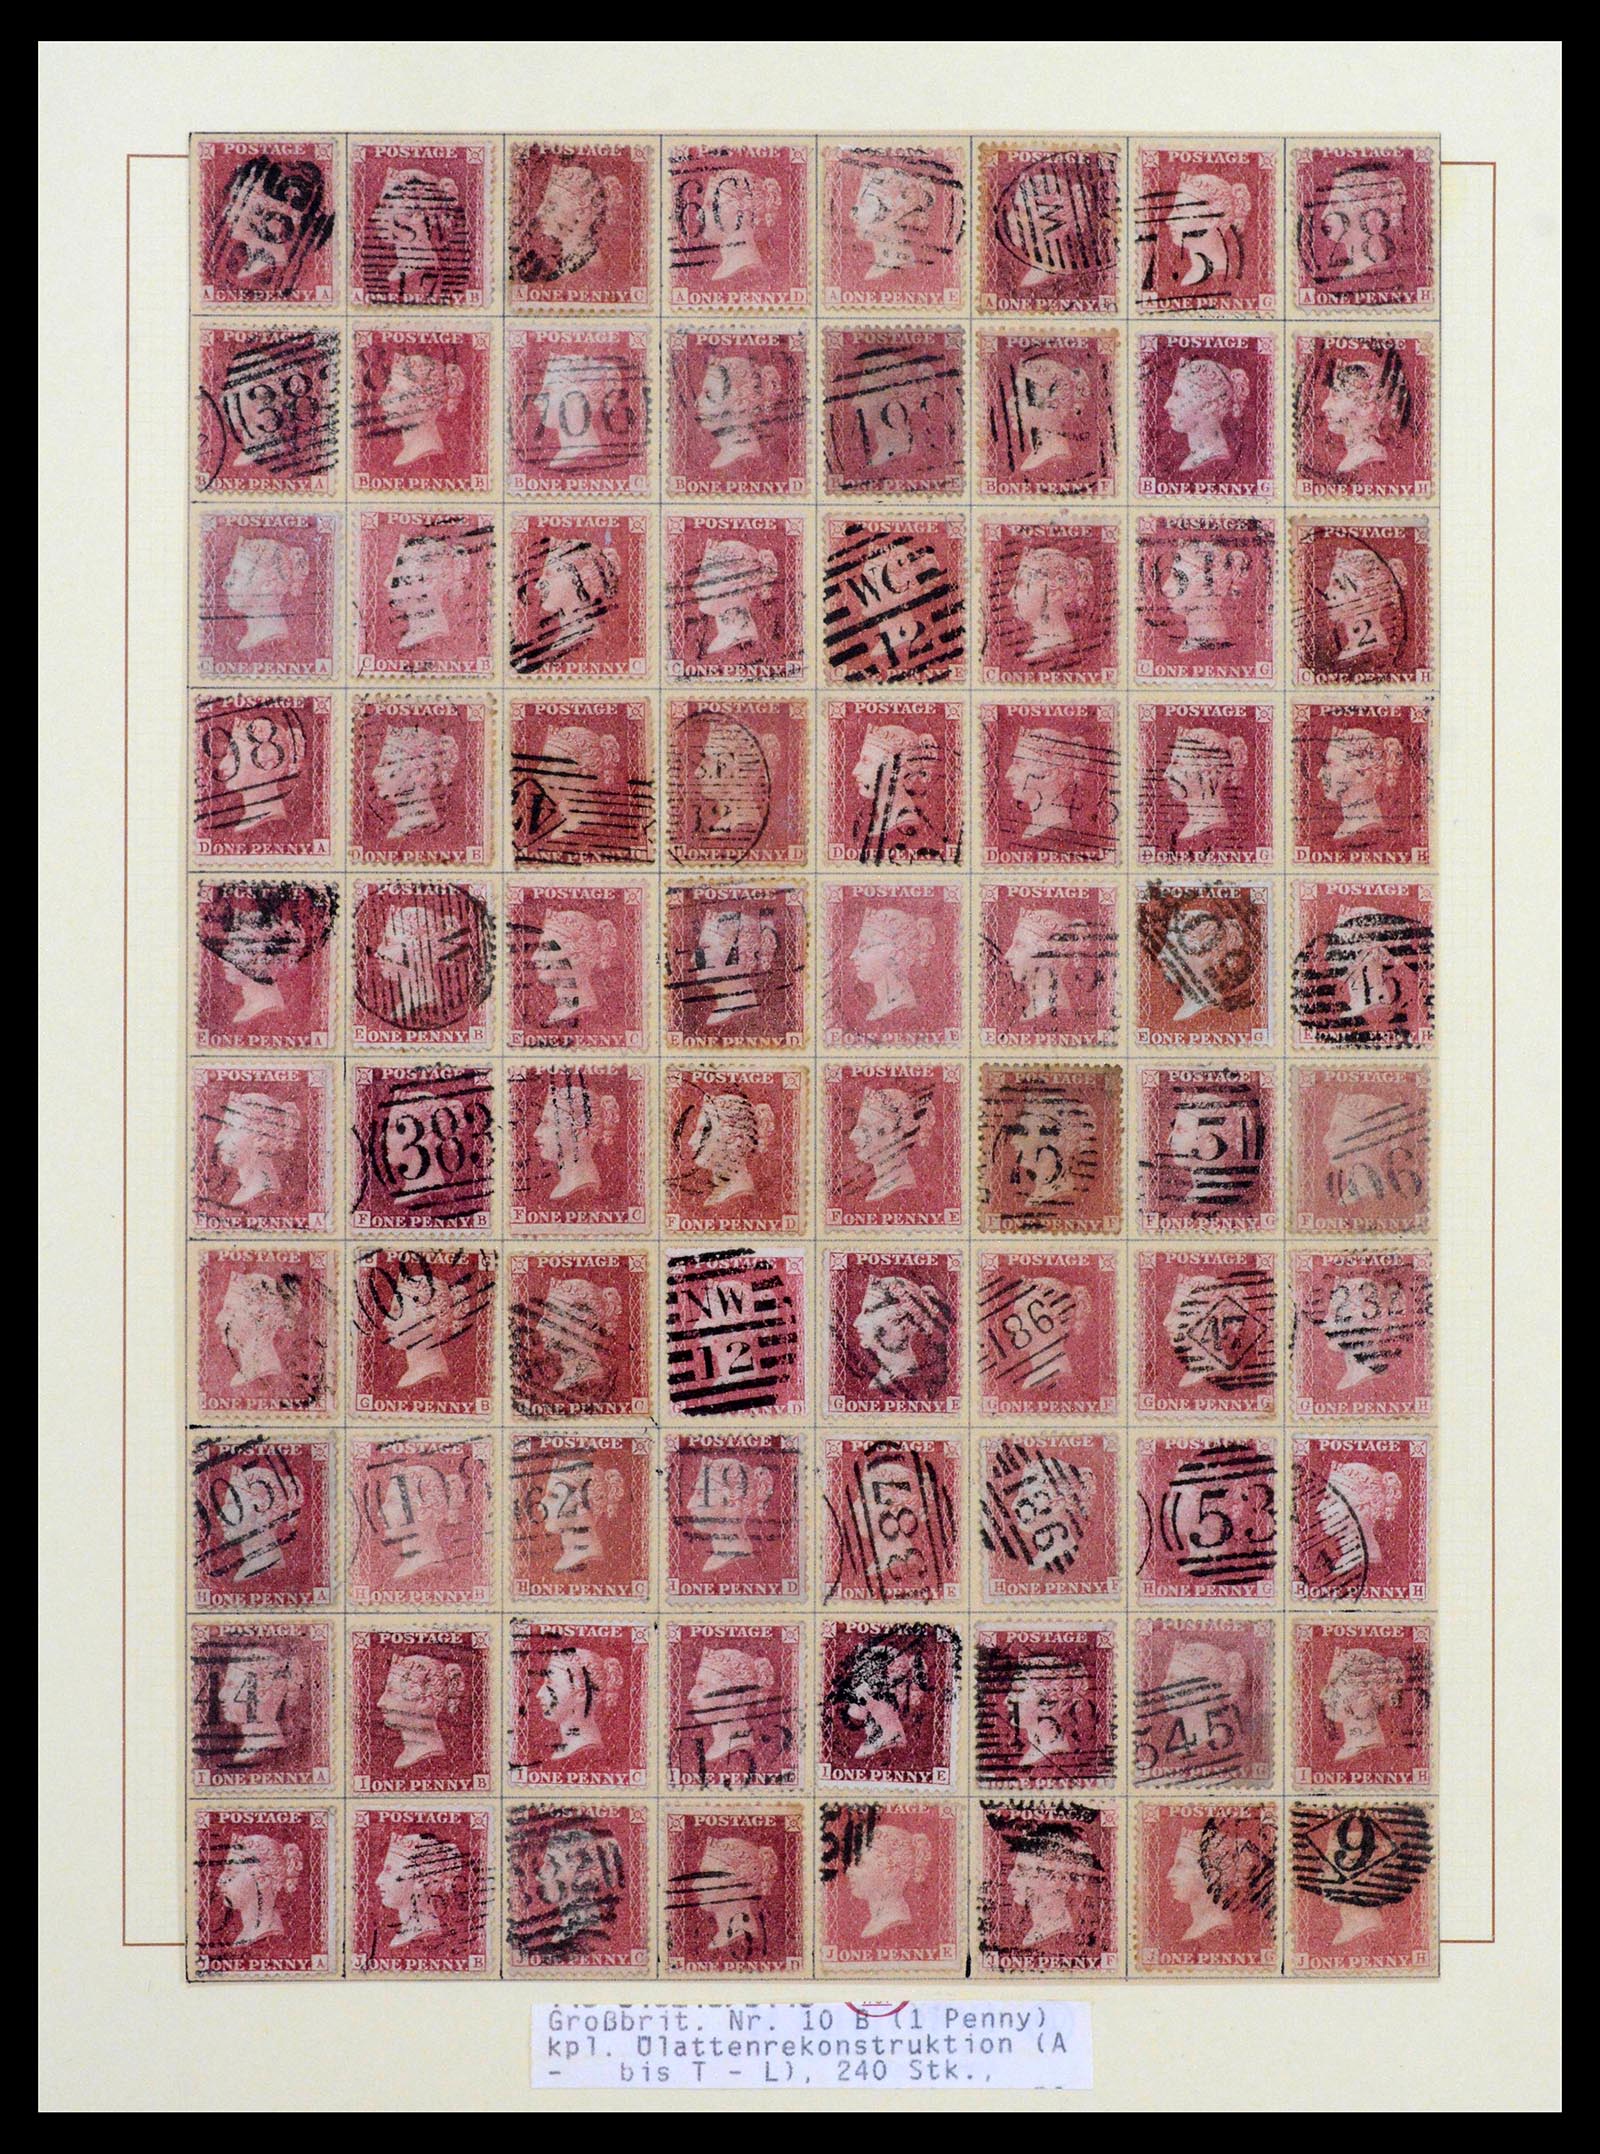 39375 0004 - Postzegelverzameling 39375 Engeland topverzameling 1840-1980.